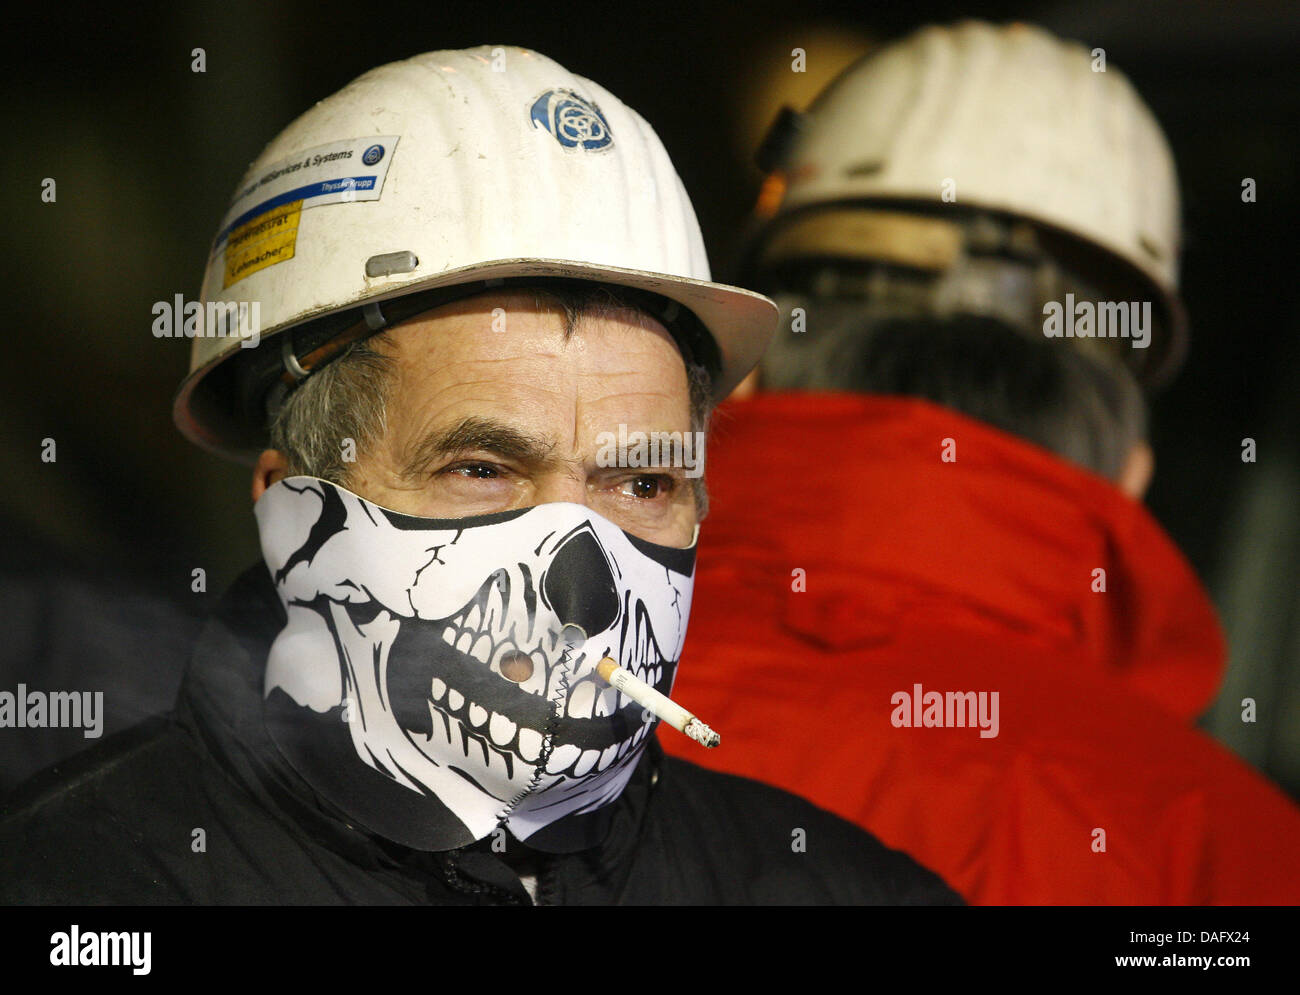 Ein Stahlarbeiter der ThyssenKrupp AG demonstriert am Donnerstag (24.02.2011) vor dem Tor 1 in Duisburg mit Totenmaske und Zigarette. Sie beteiligen sich am bundesweiten Aktionstagder IG Metall zum Thema Leiharbeit. Foto: Roland Weihrauch dpa/lnw Foto Stock